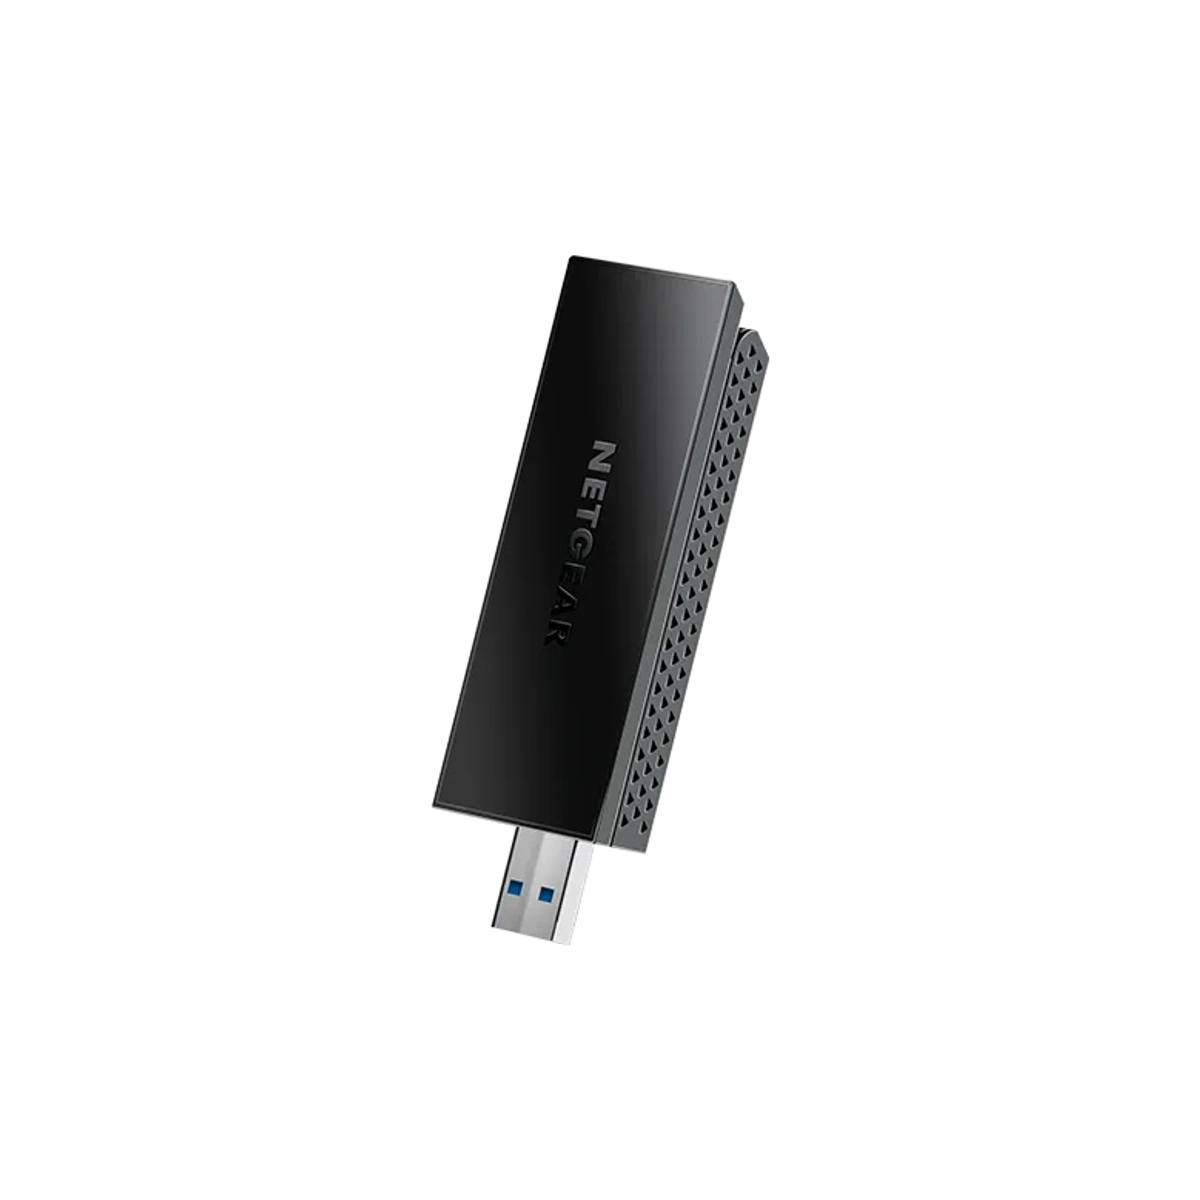 1PT AX1800 USB3.0 ADAPTER (A7500)